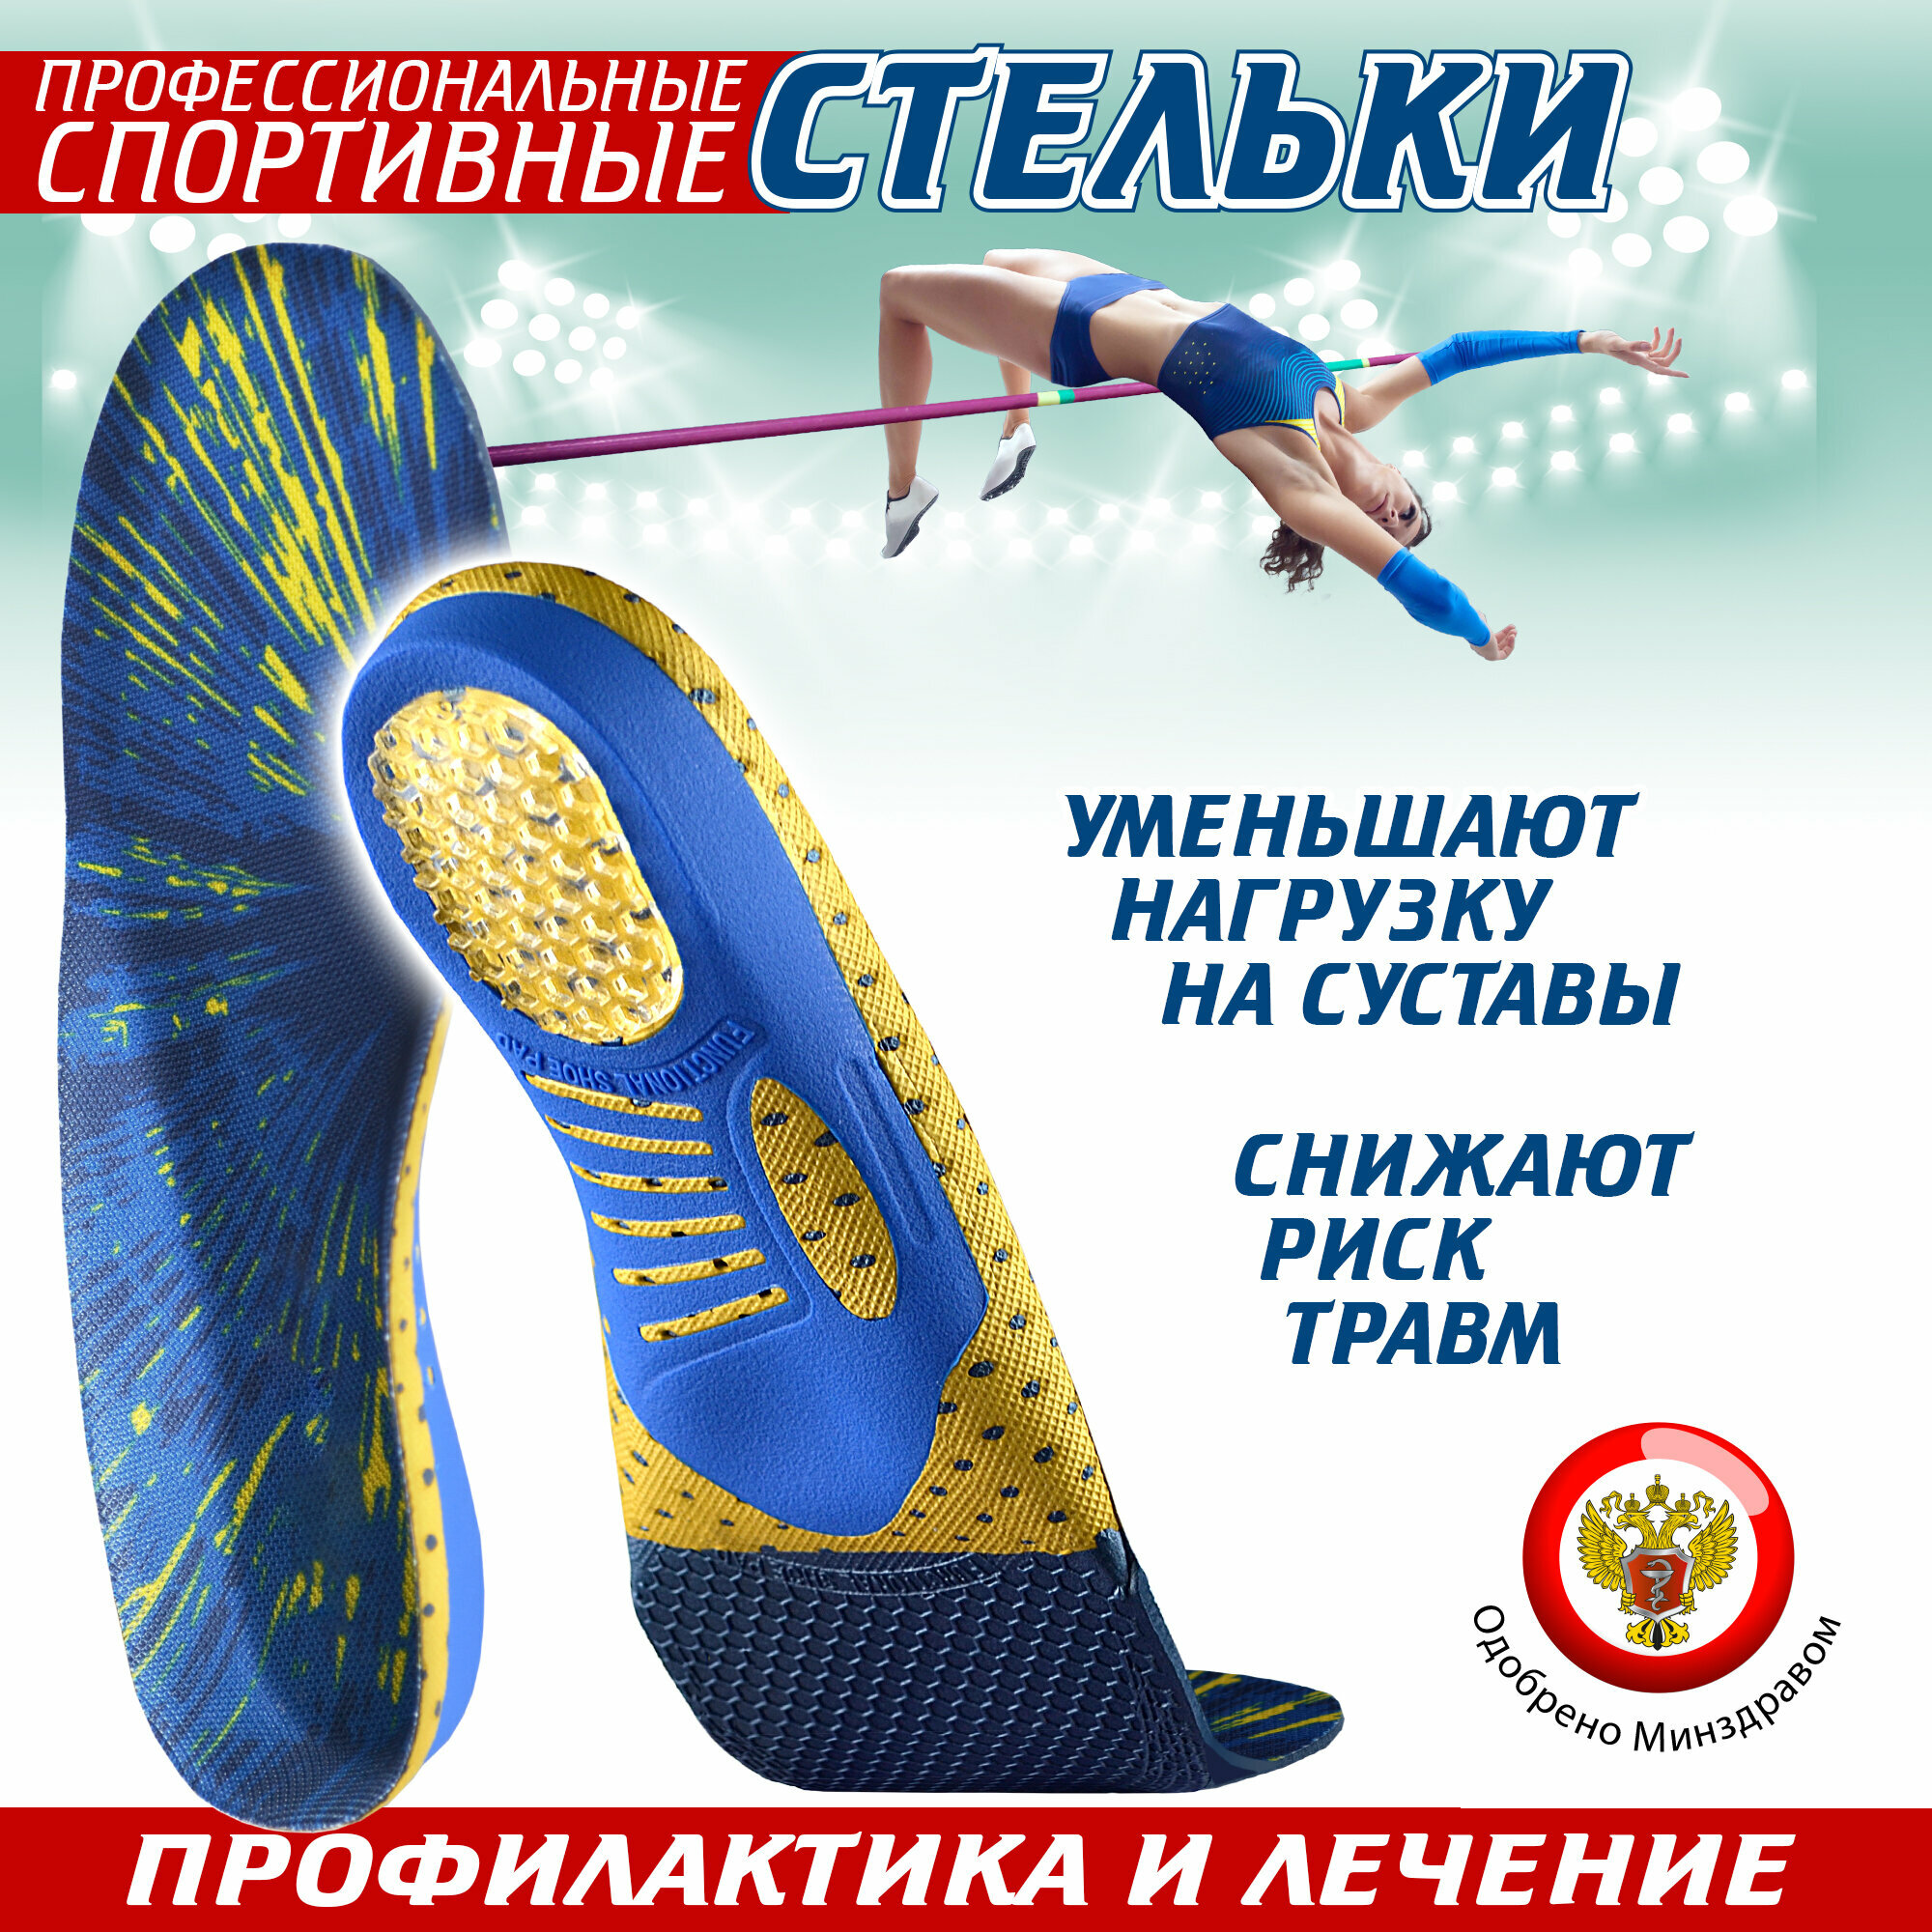 Ортопедические стельки спортивные Sport, для обуви (44)